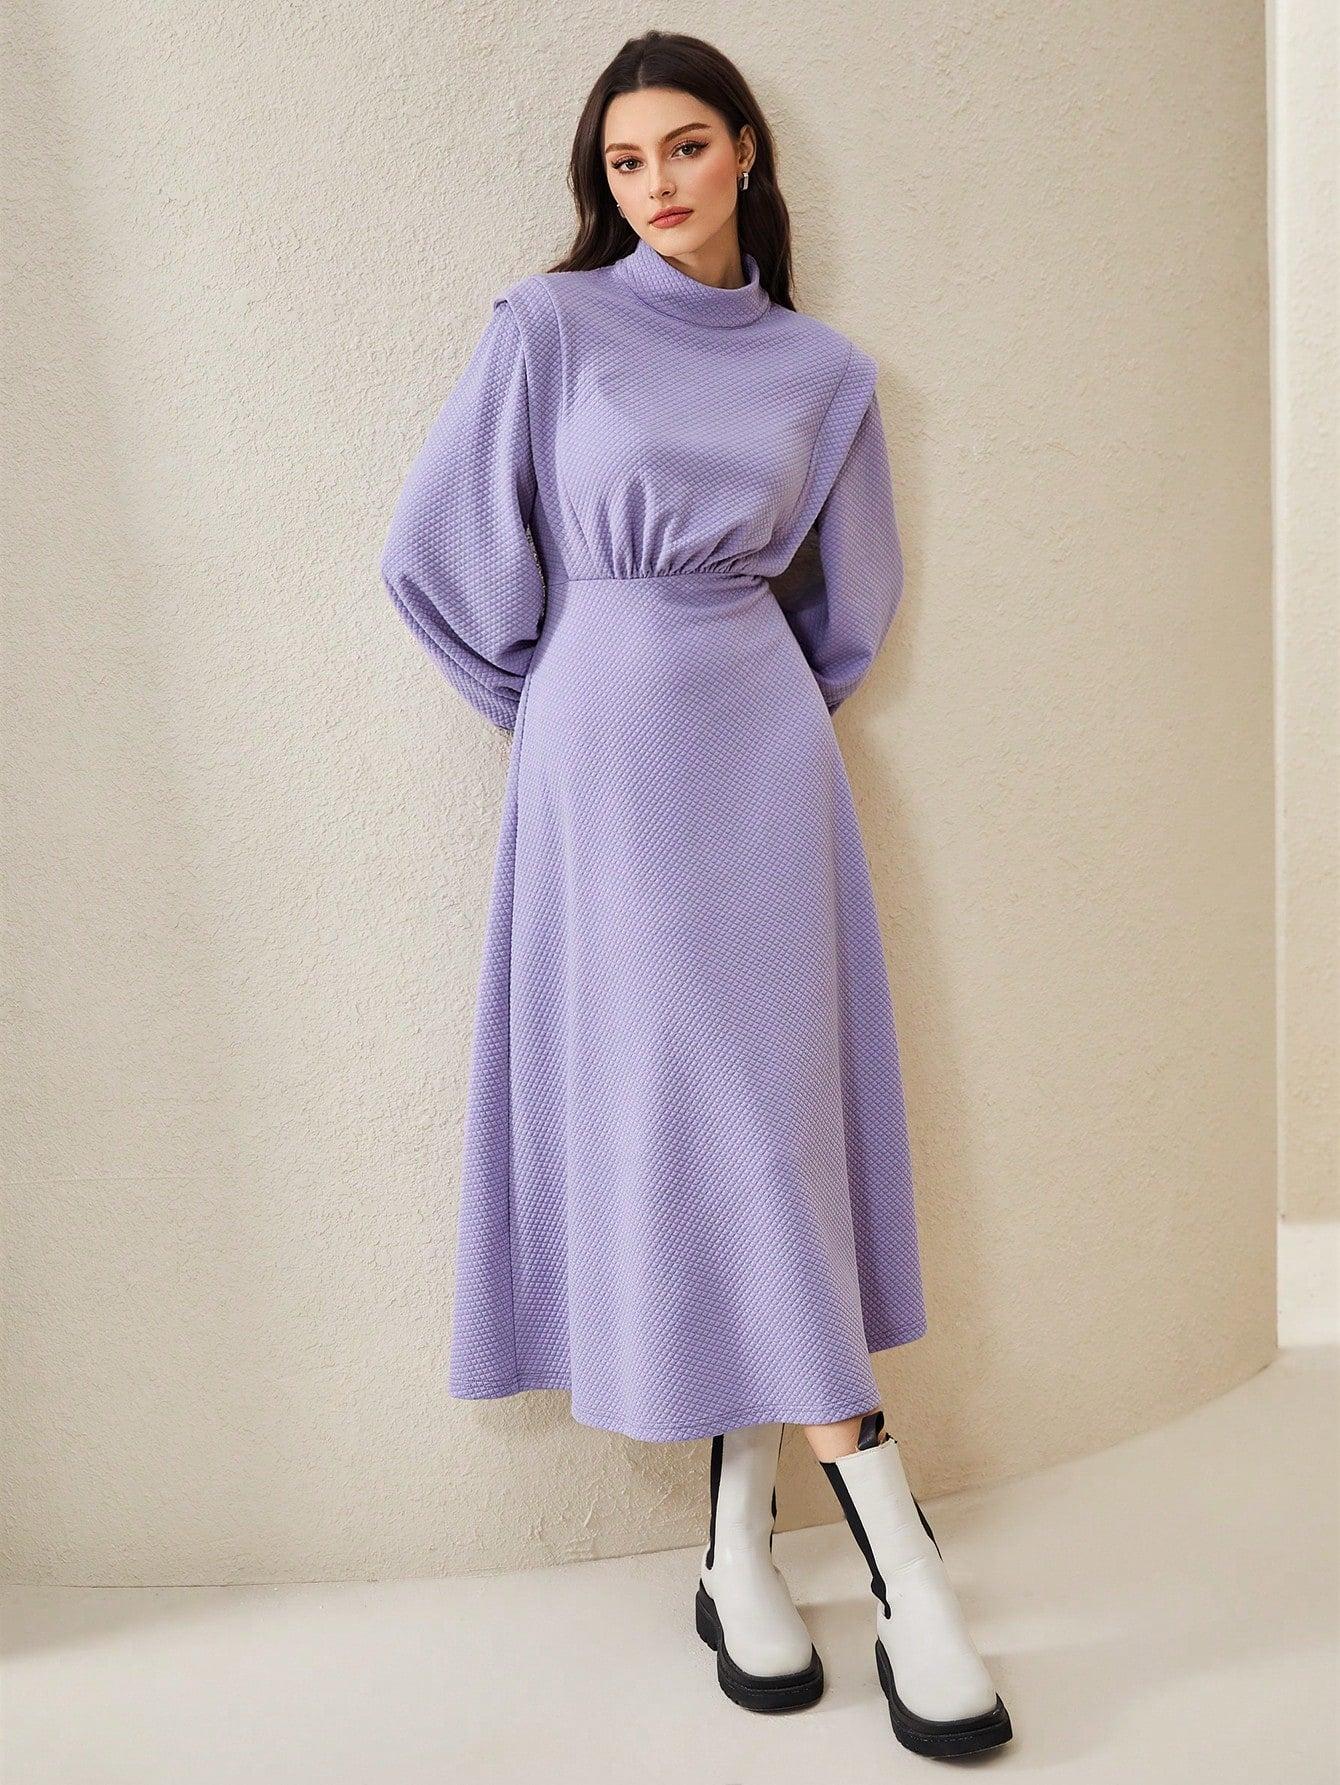 fioletowa sukienka do połowy łydki tekstura